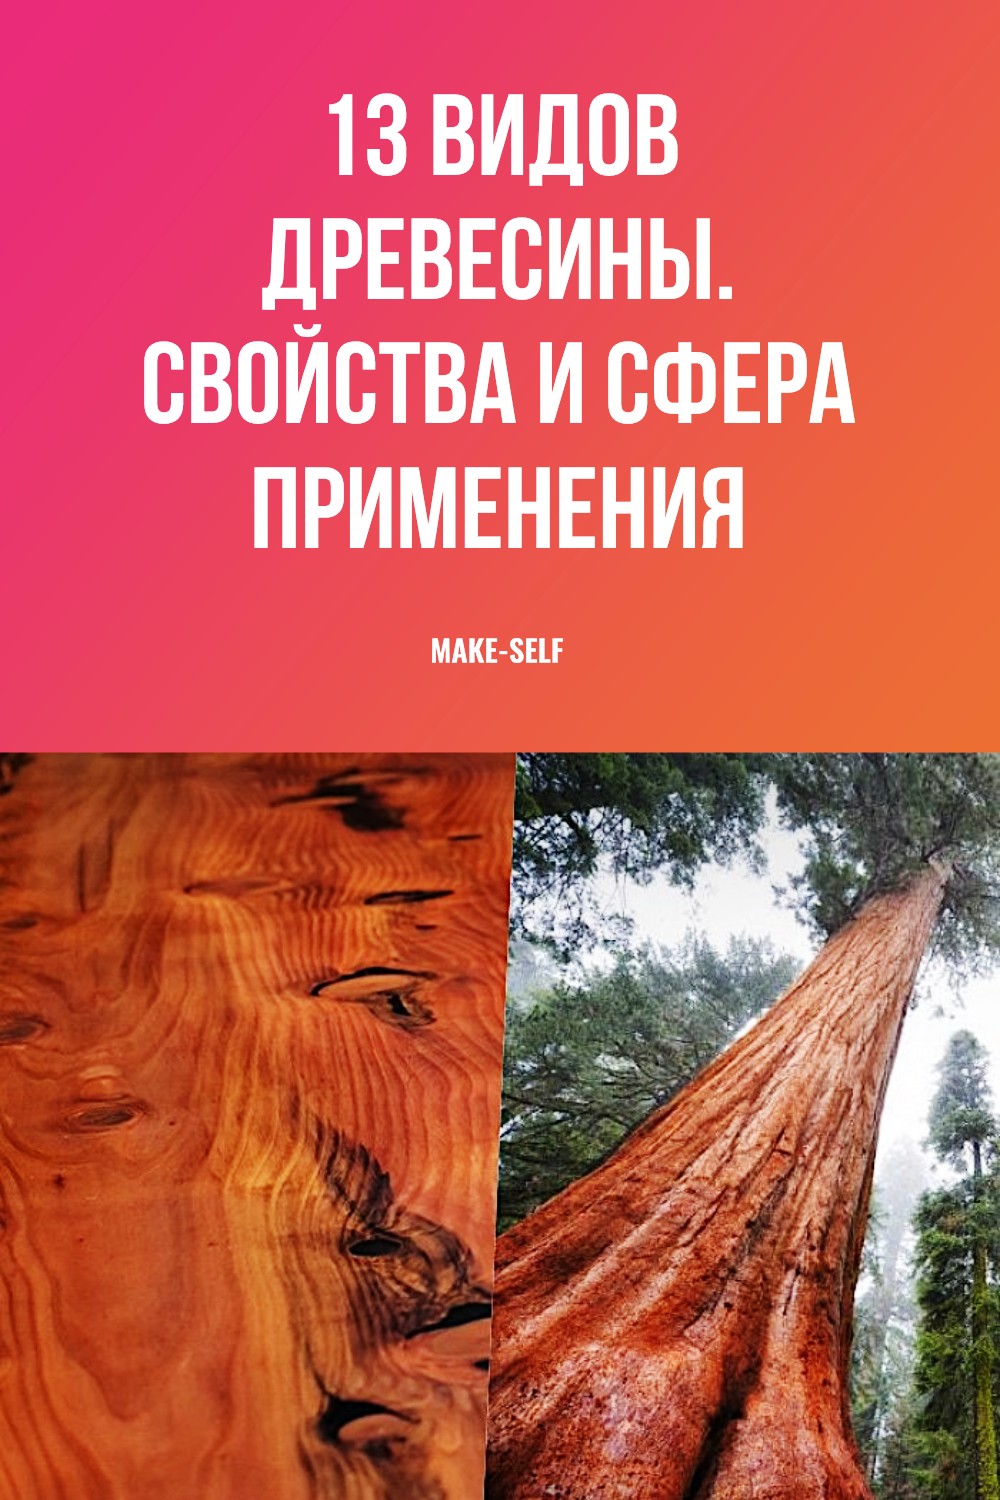 13 Видов древесины. Свойства и сфера применения